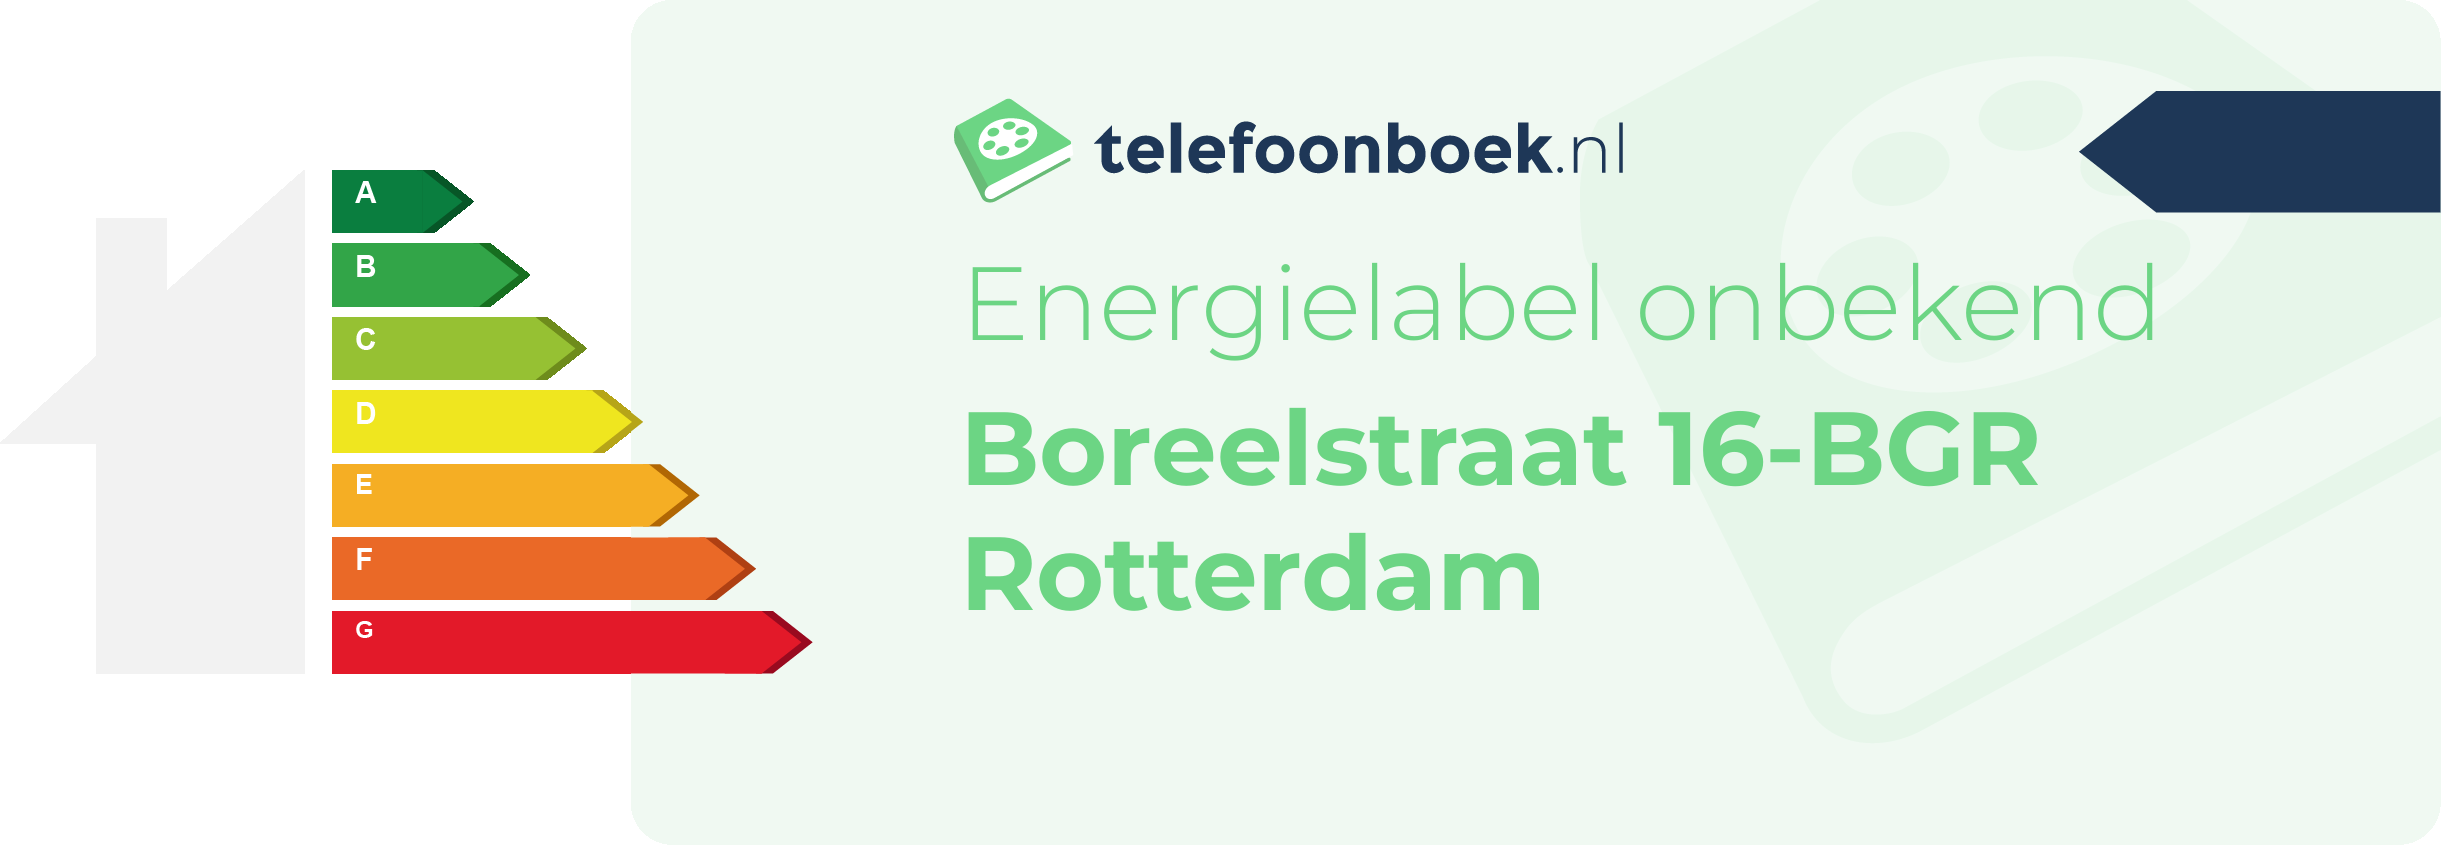 Energielabel Boreelstraat 16-BGR Rotterdam